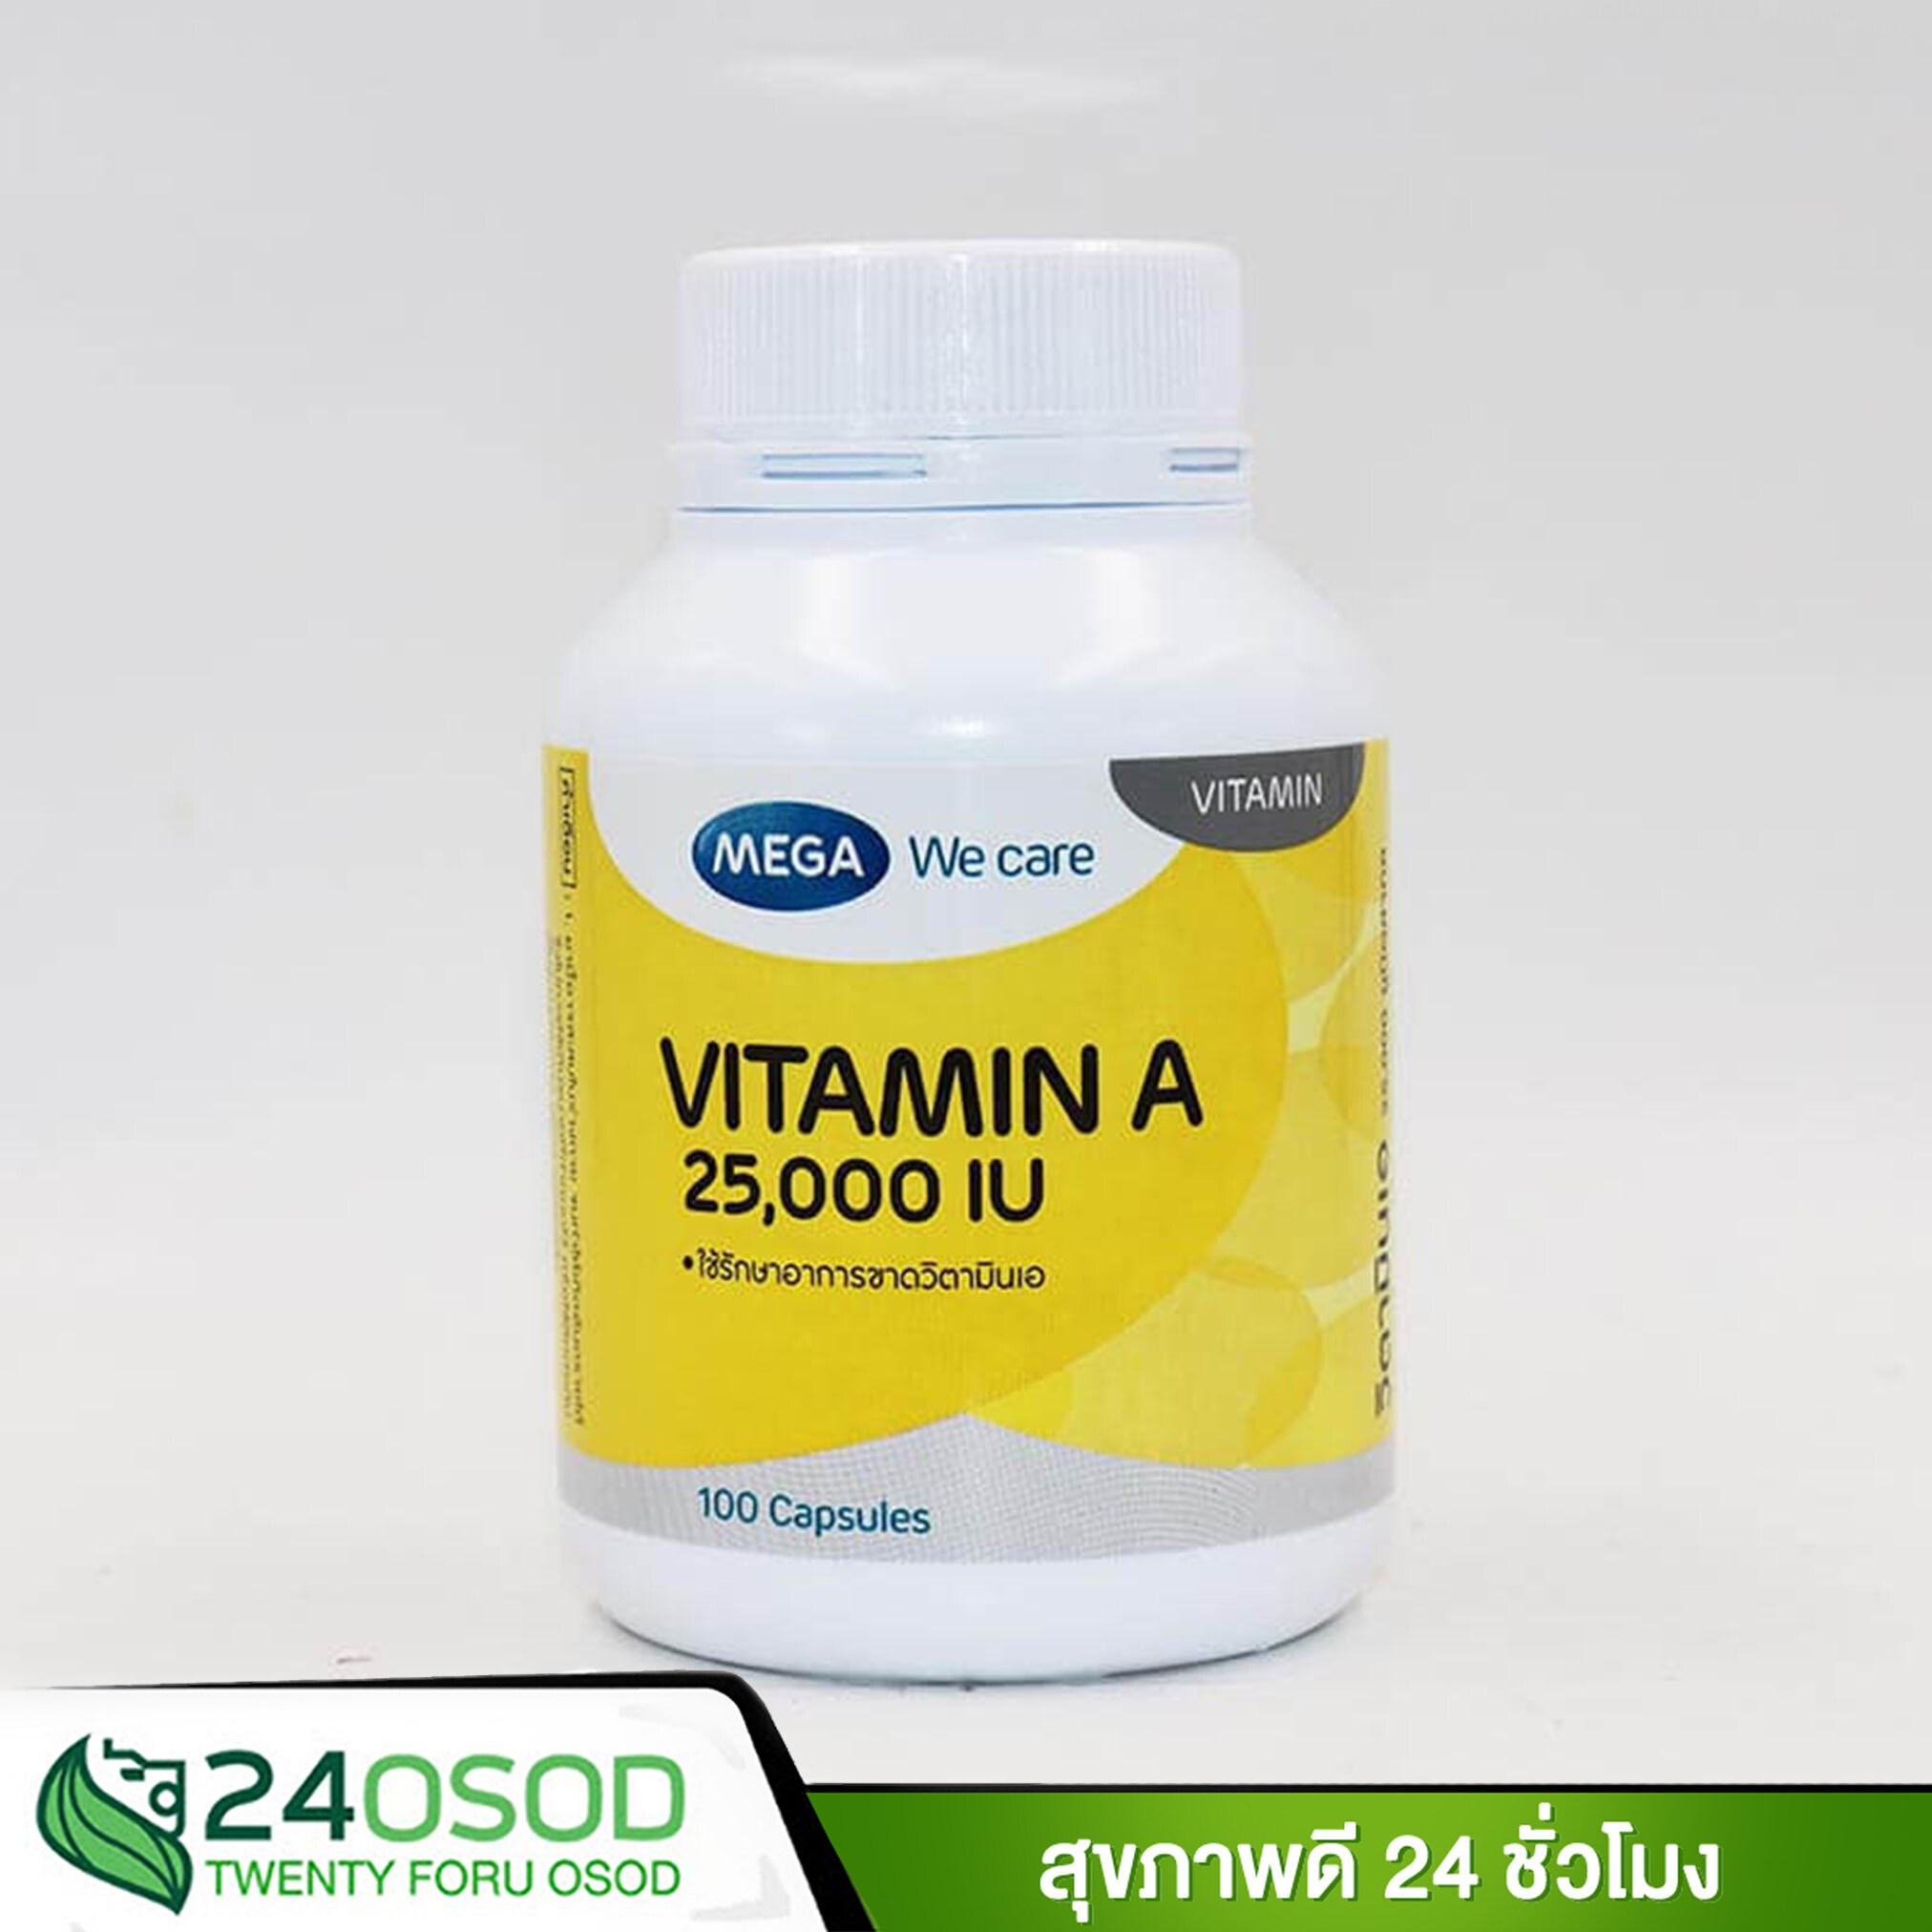 MEGA We care Vitamin A เมก้า วีแคร์ วิตามินเอ 25,000 IU ขนาด 100 แคปซูล